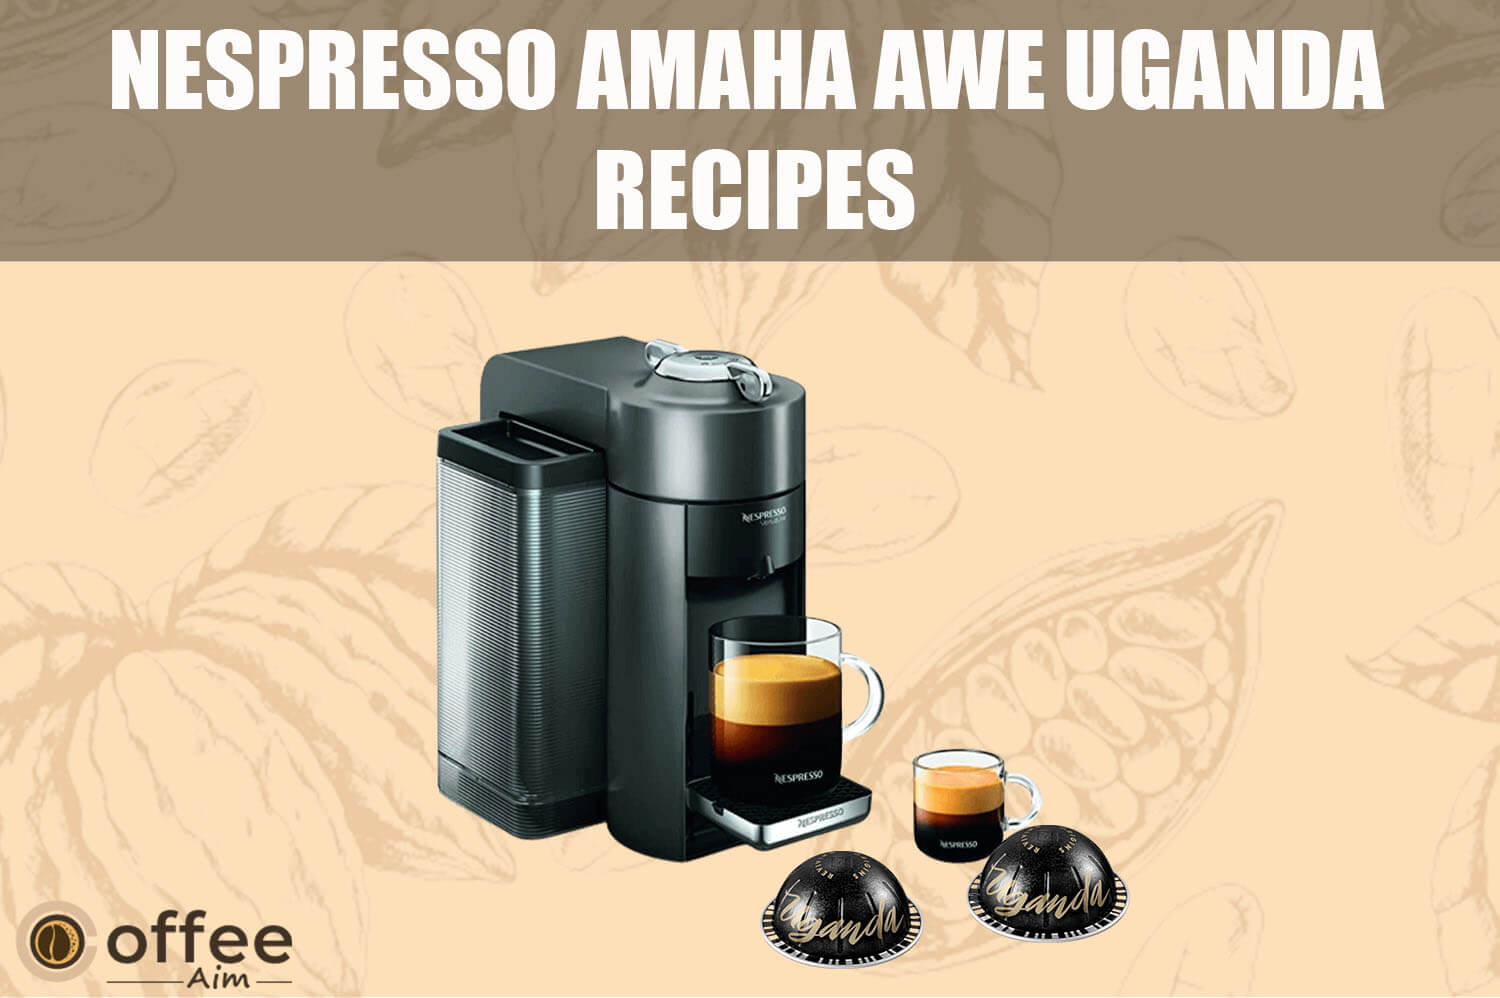 Featured image for the article "Nespresso Amaha Awe Uganda Recipes"